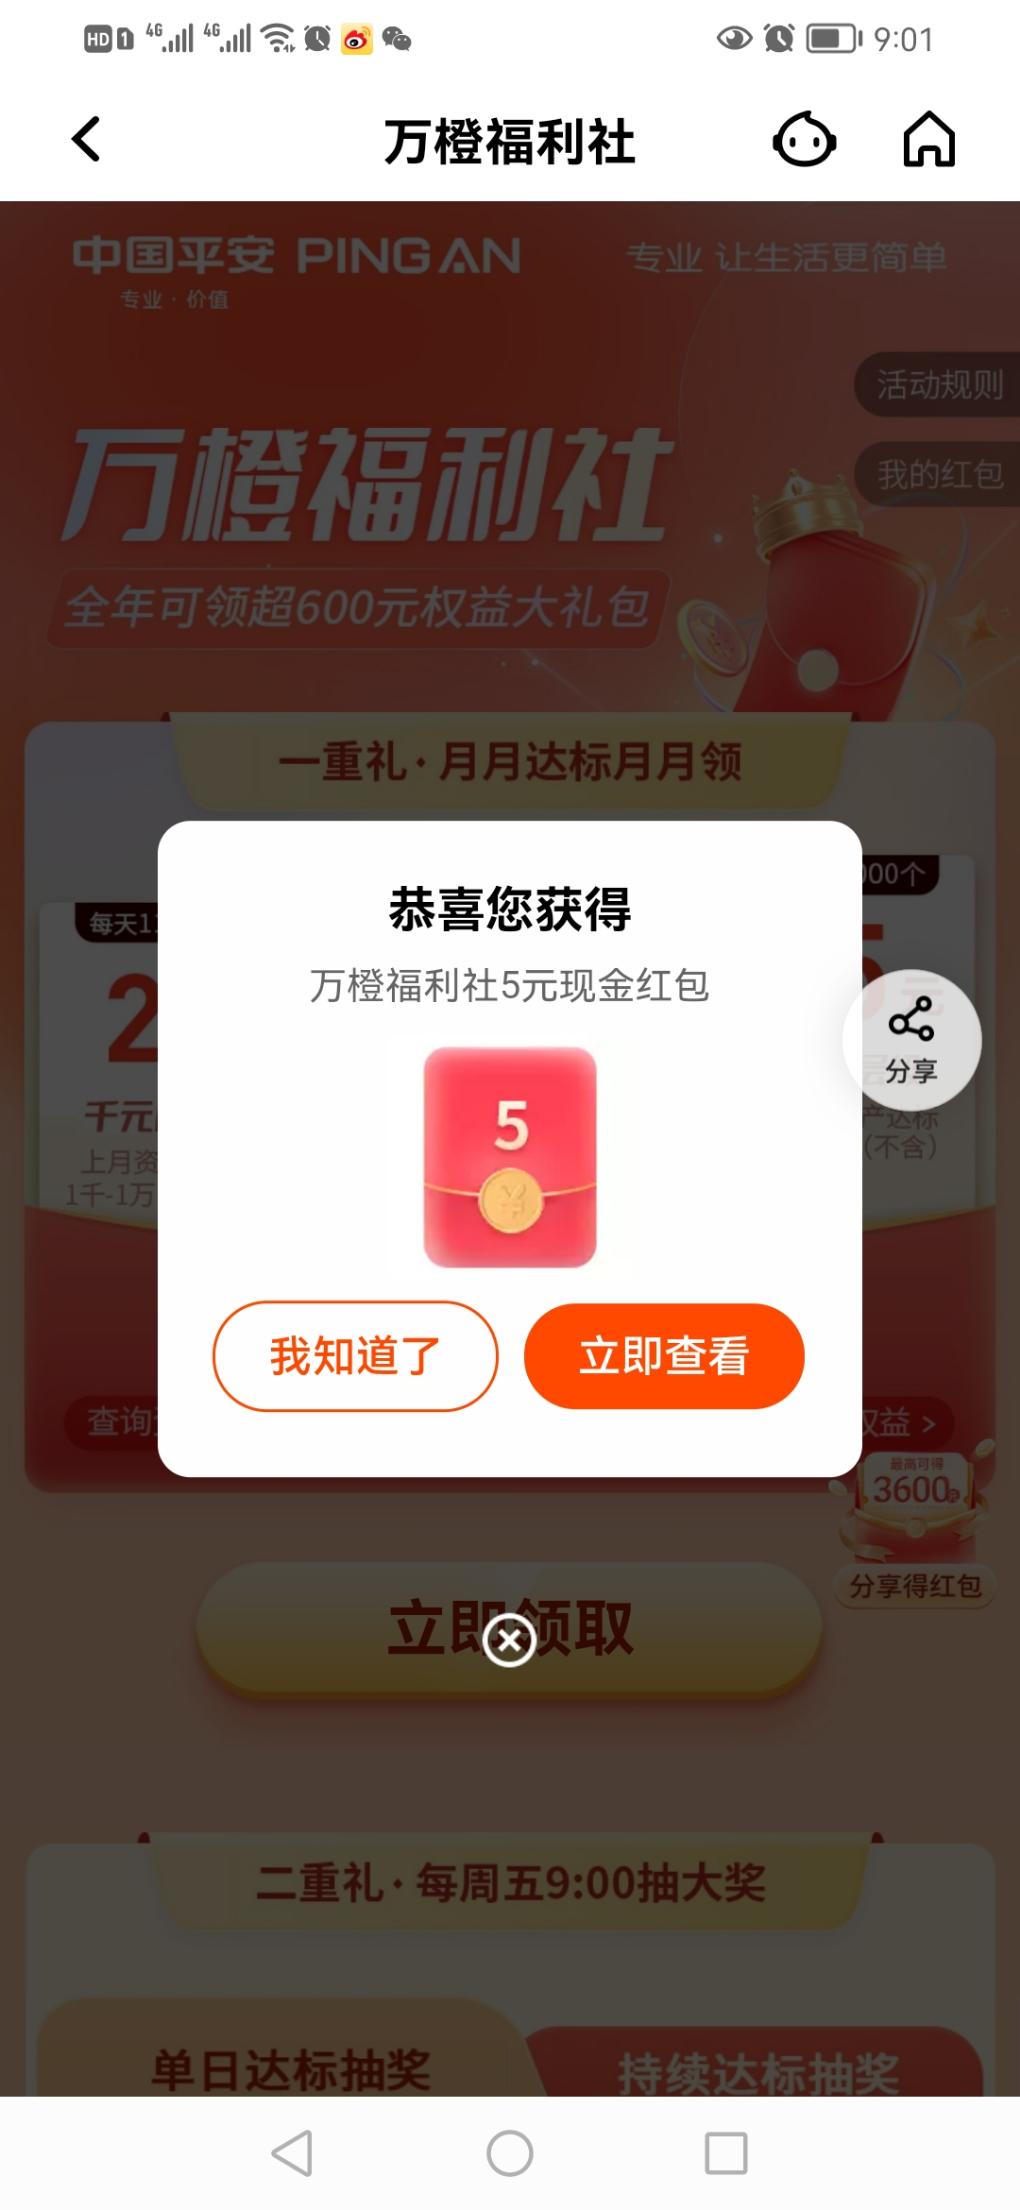 平安口袋银行搜-惠小助(52huixz.com)